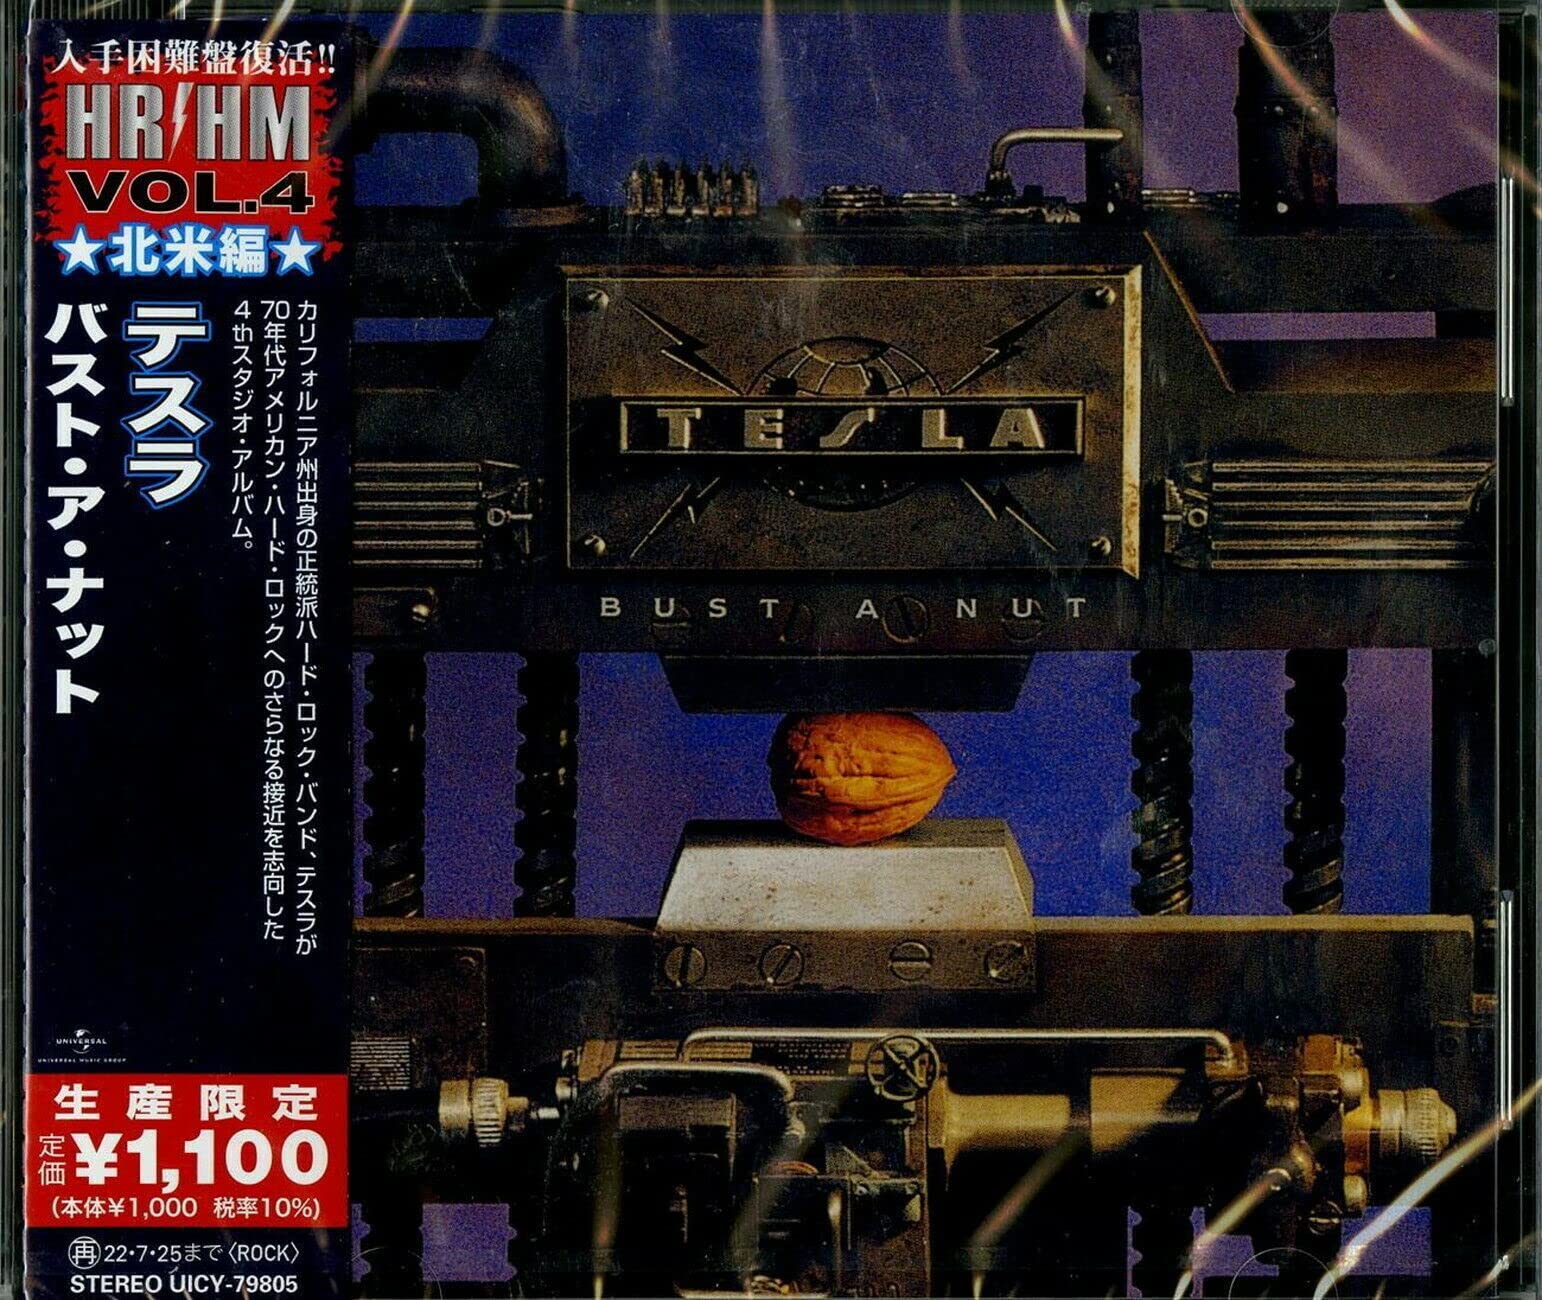 [CD] Bust a Nut Limited Edition w/ Bonus Track Tesla UICY-79805 1994 Album NEW